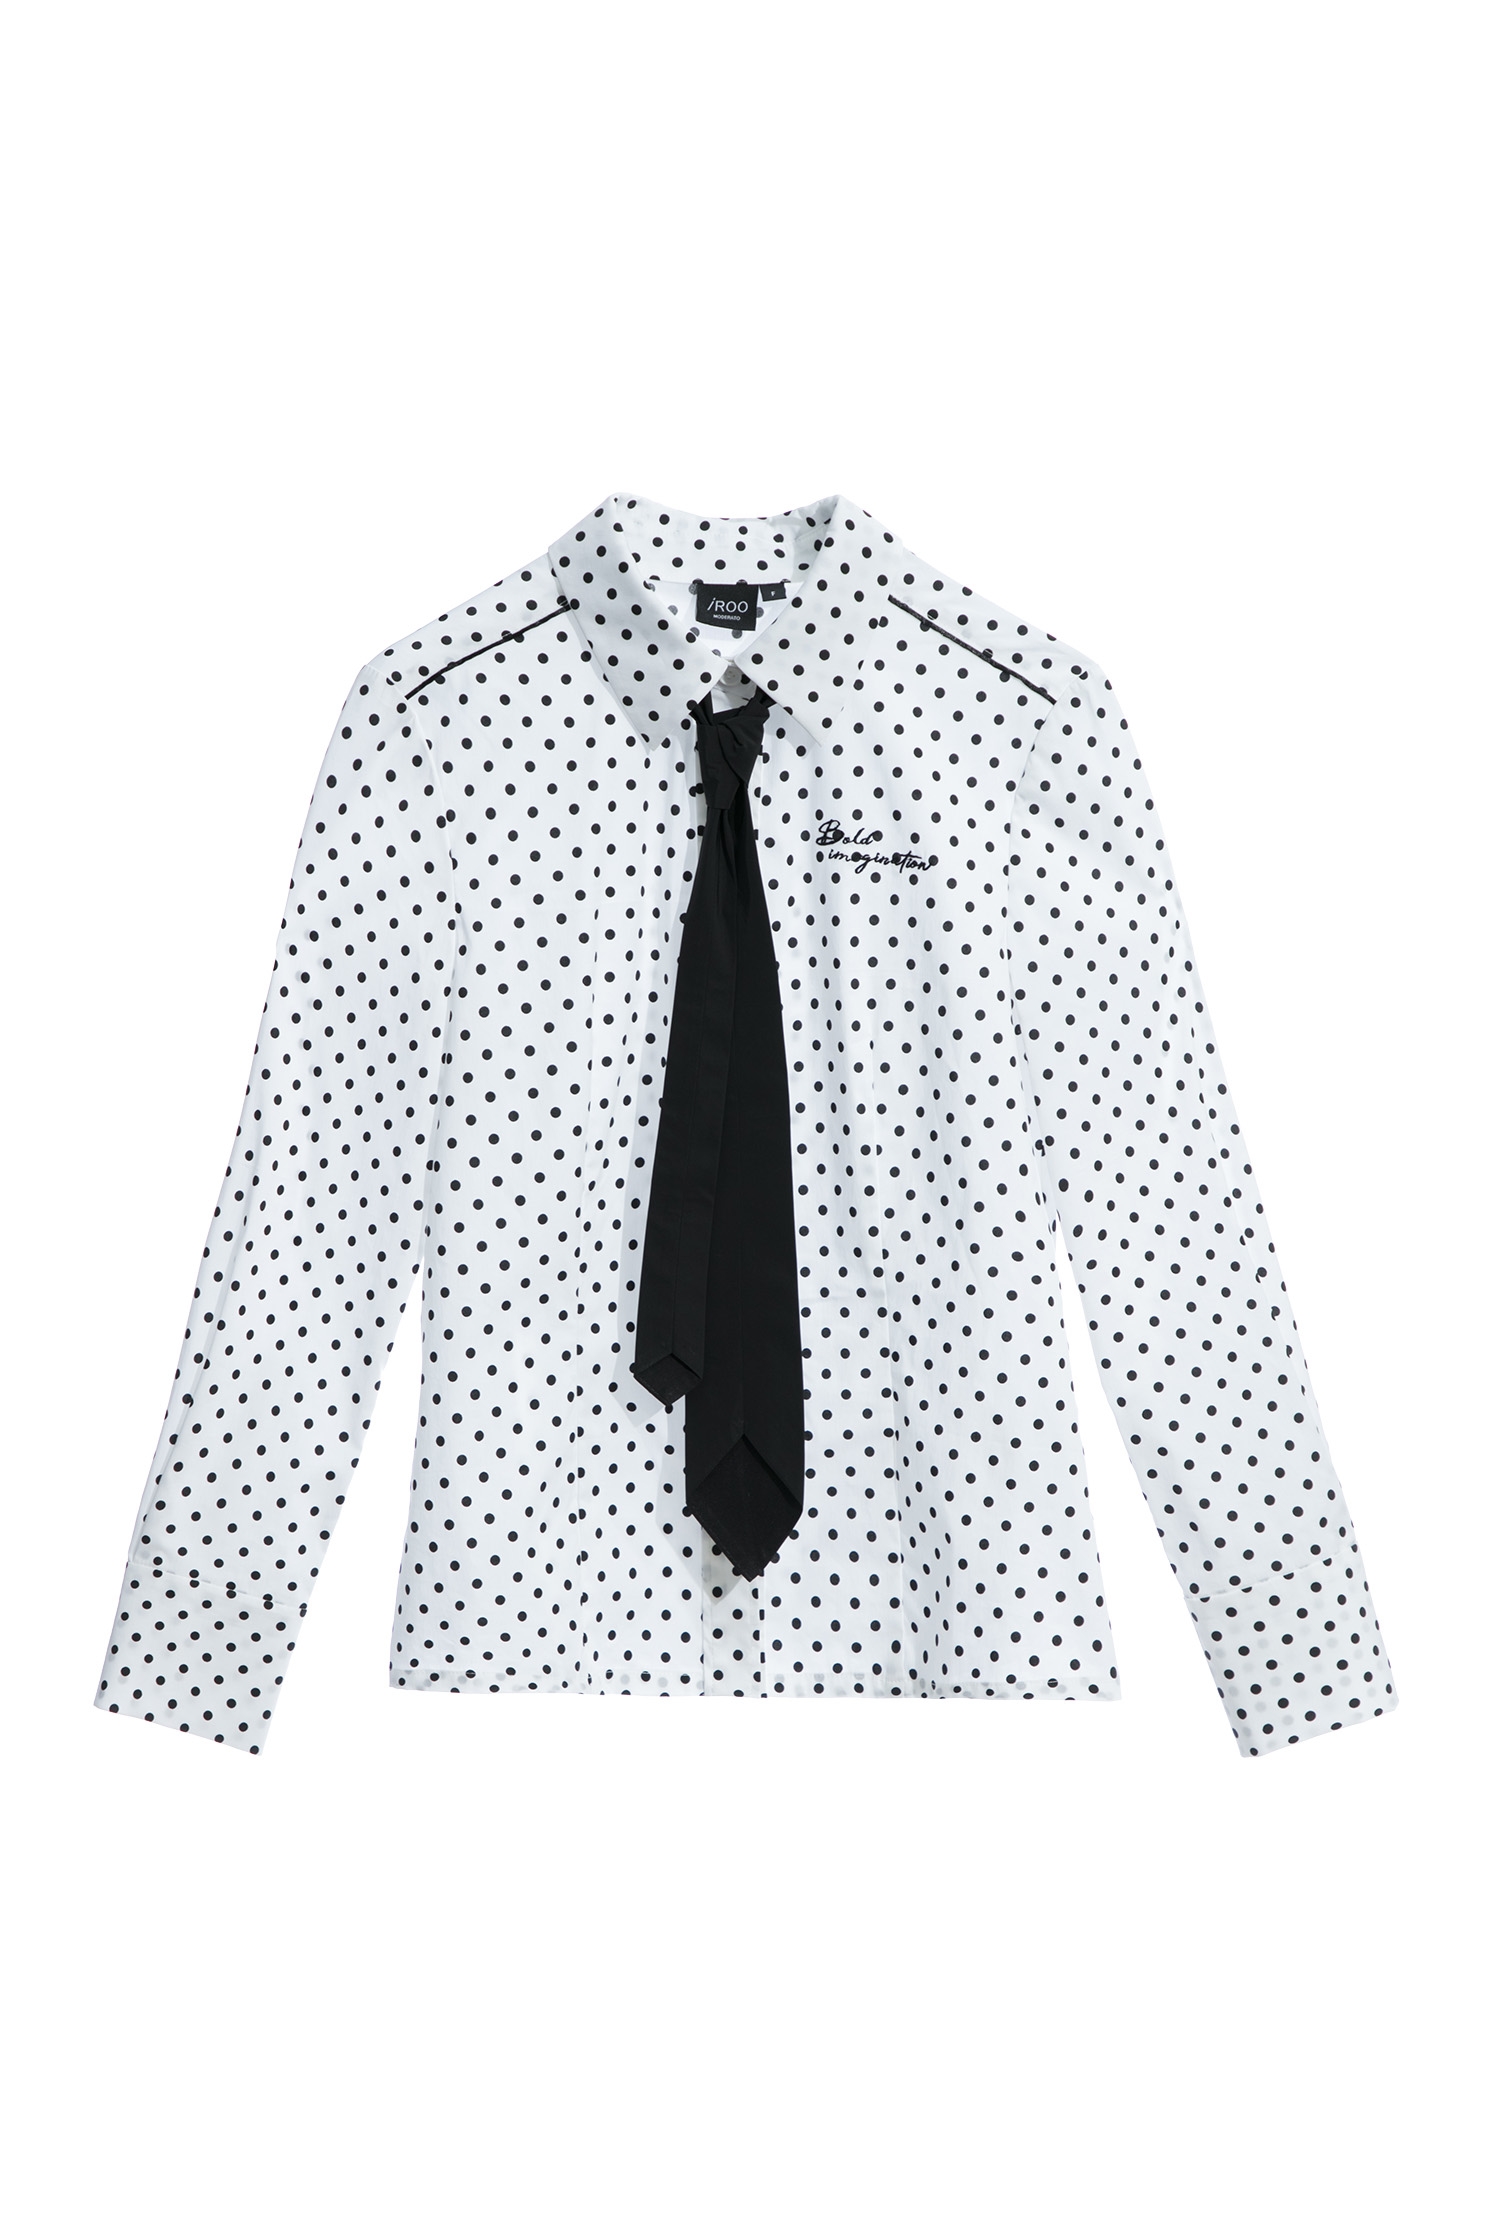 黑白點領帶襯衫黑白點領帶襯衫,人氣商品,秋冬穿搭,襯衫